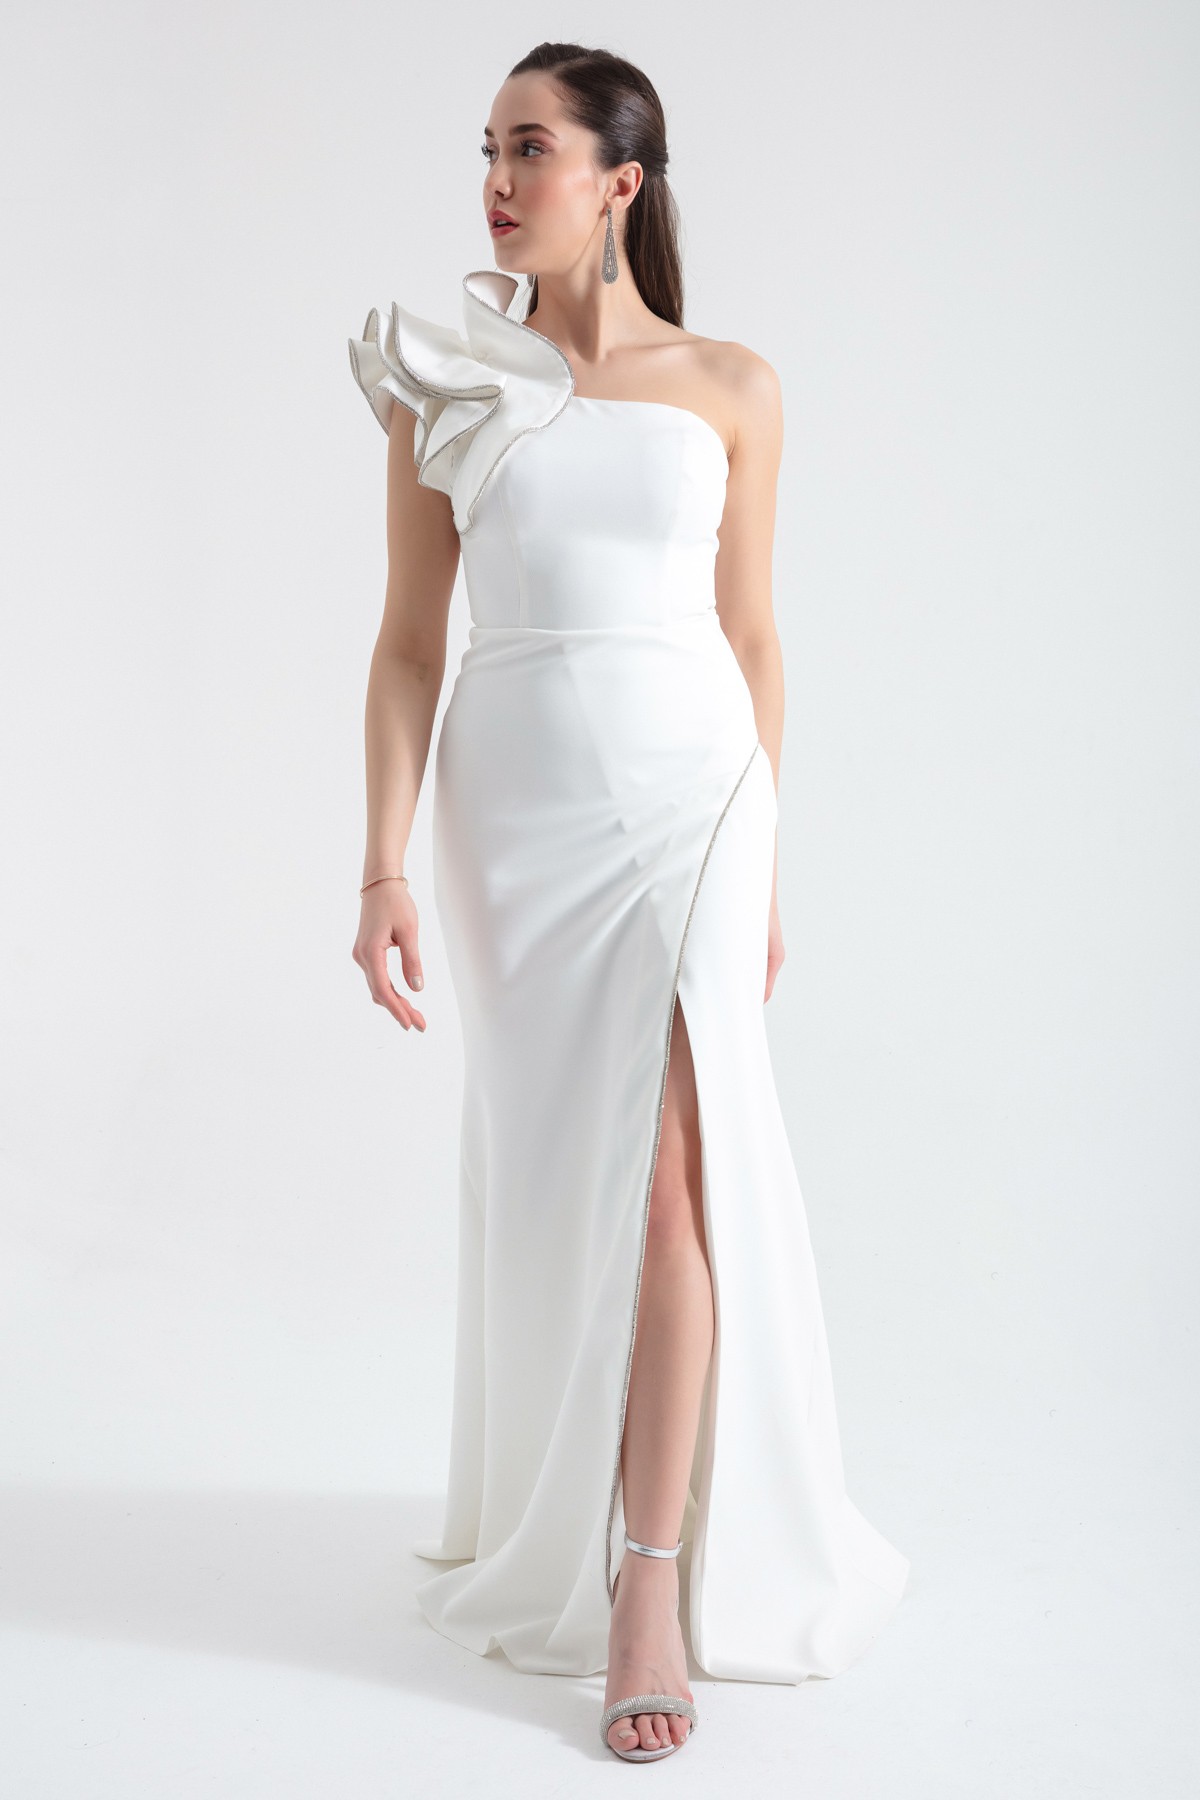 Kadın Tek Omuzlu Yırtmaçlı Uzun Abiye Elbise - Beyaz